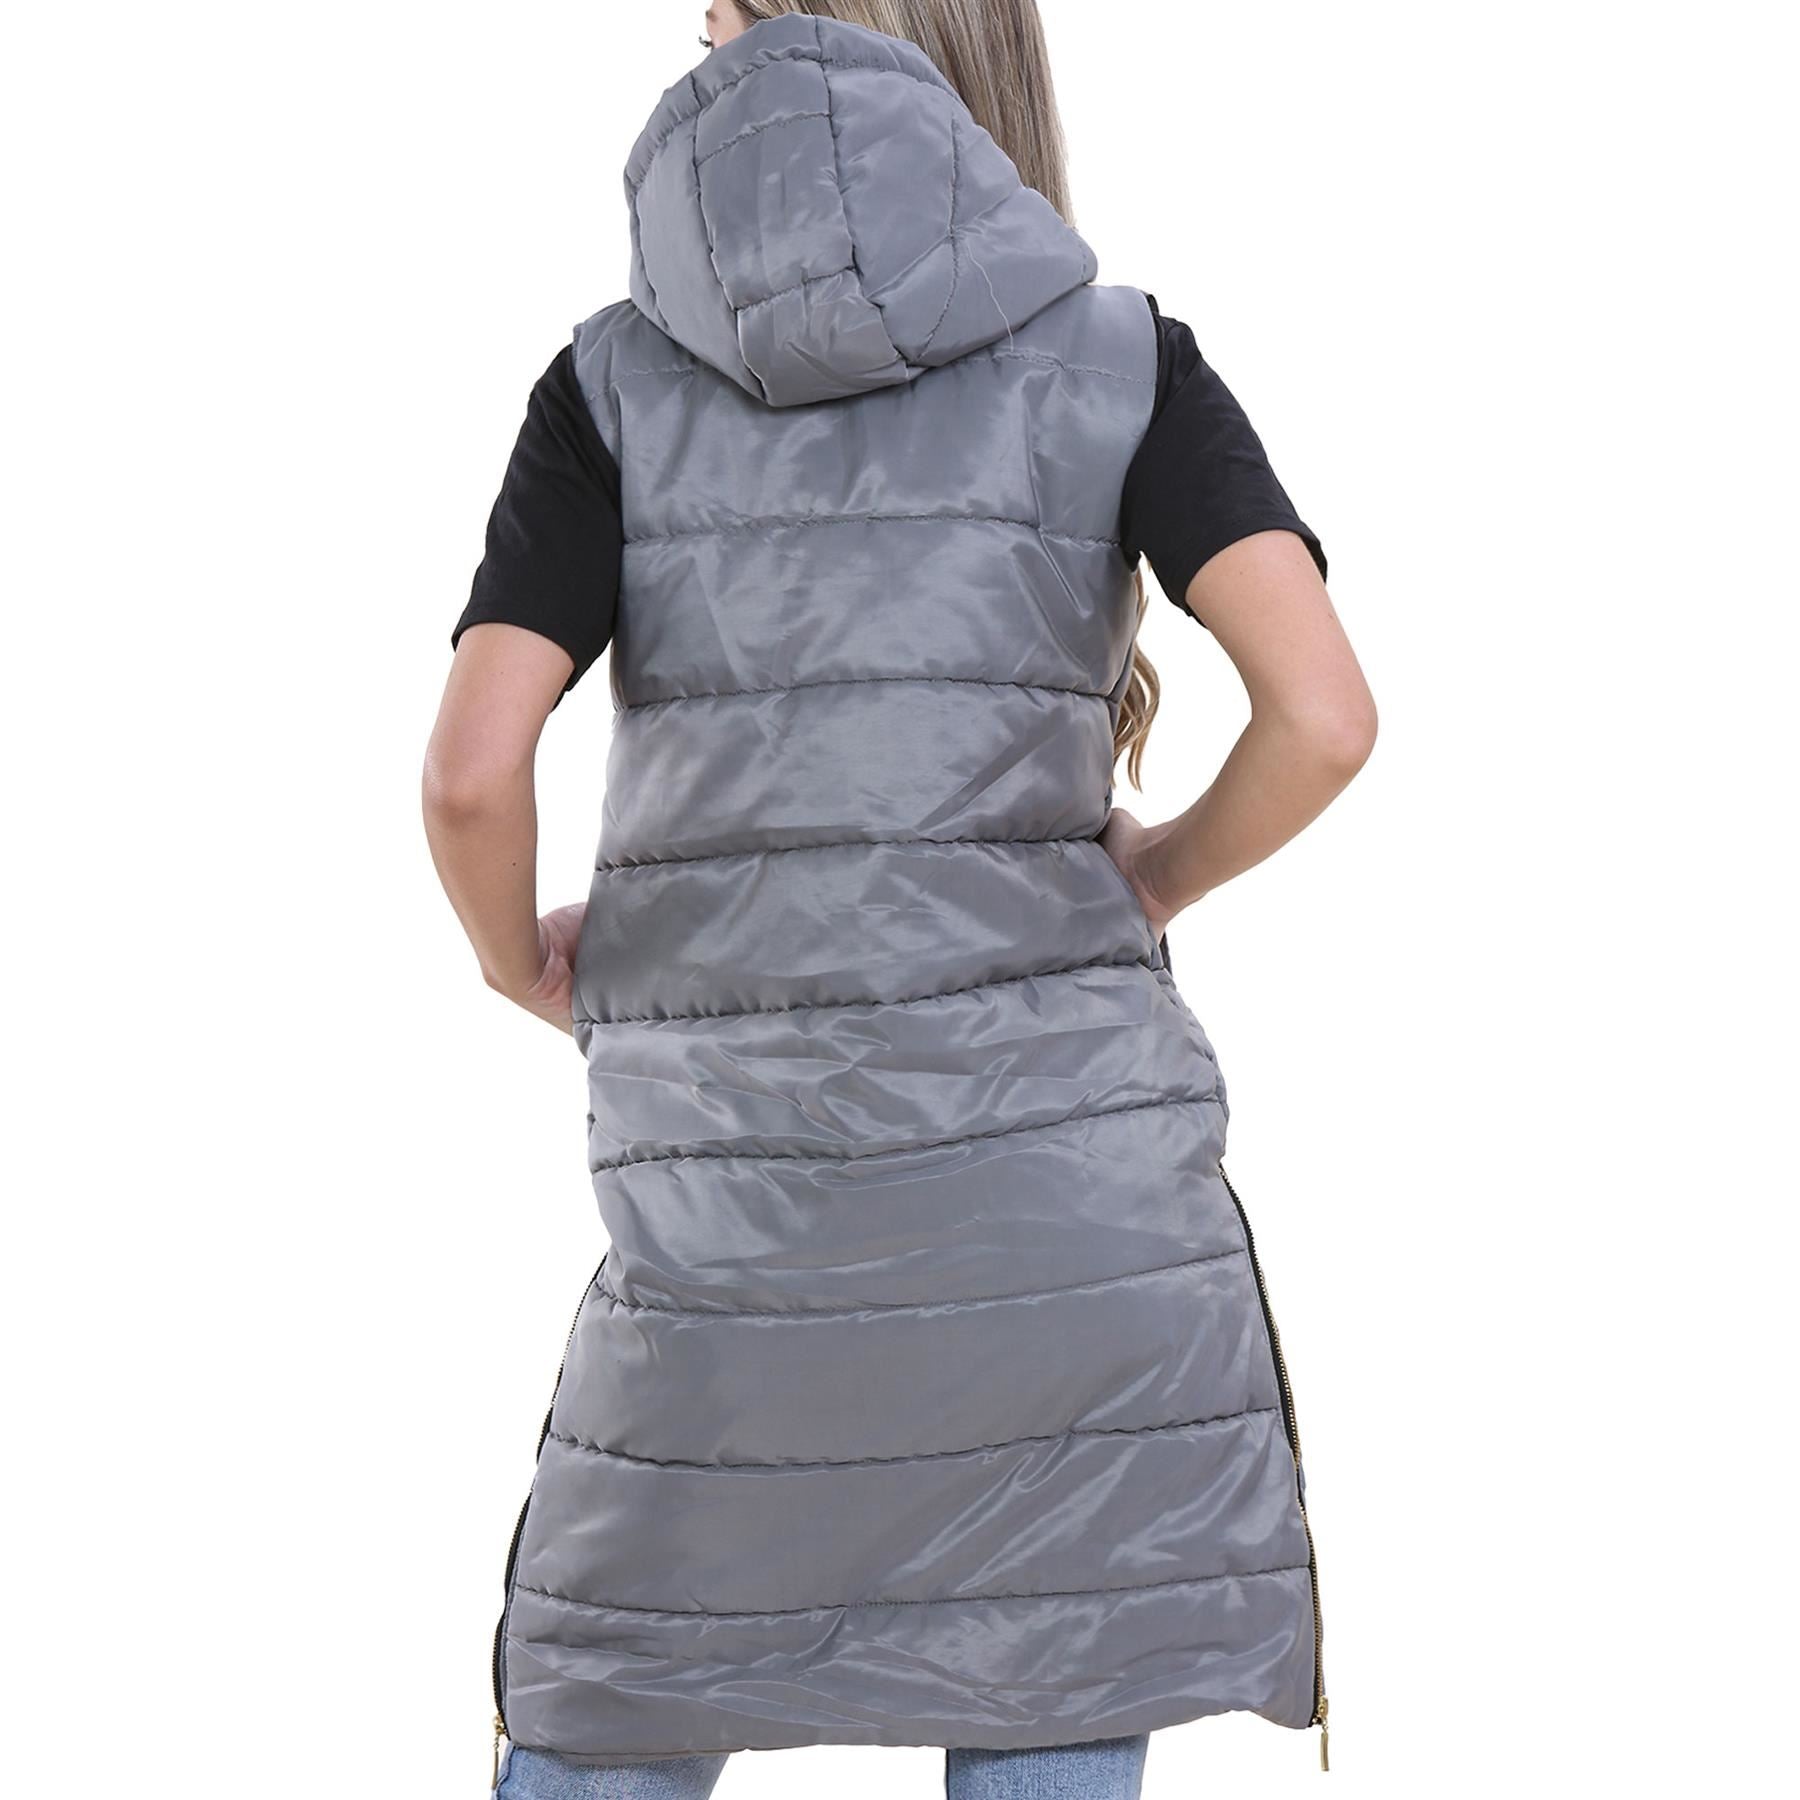 Ladies Oversized Gilet Sleeveless Fashion Steel Grey Jackets